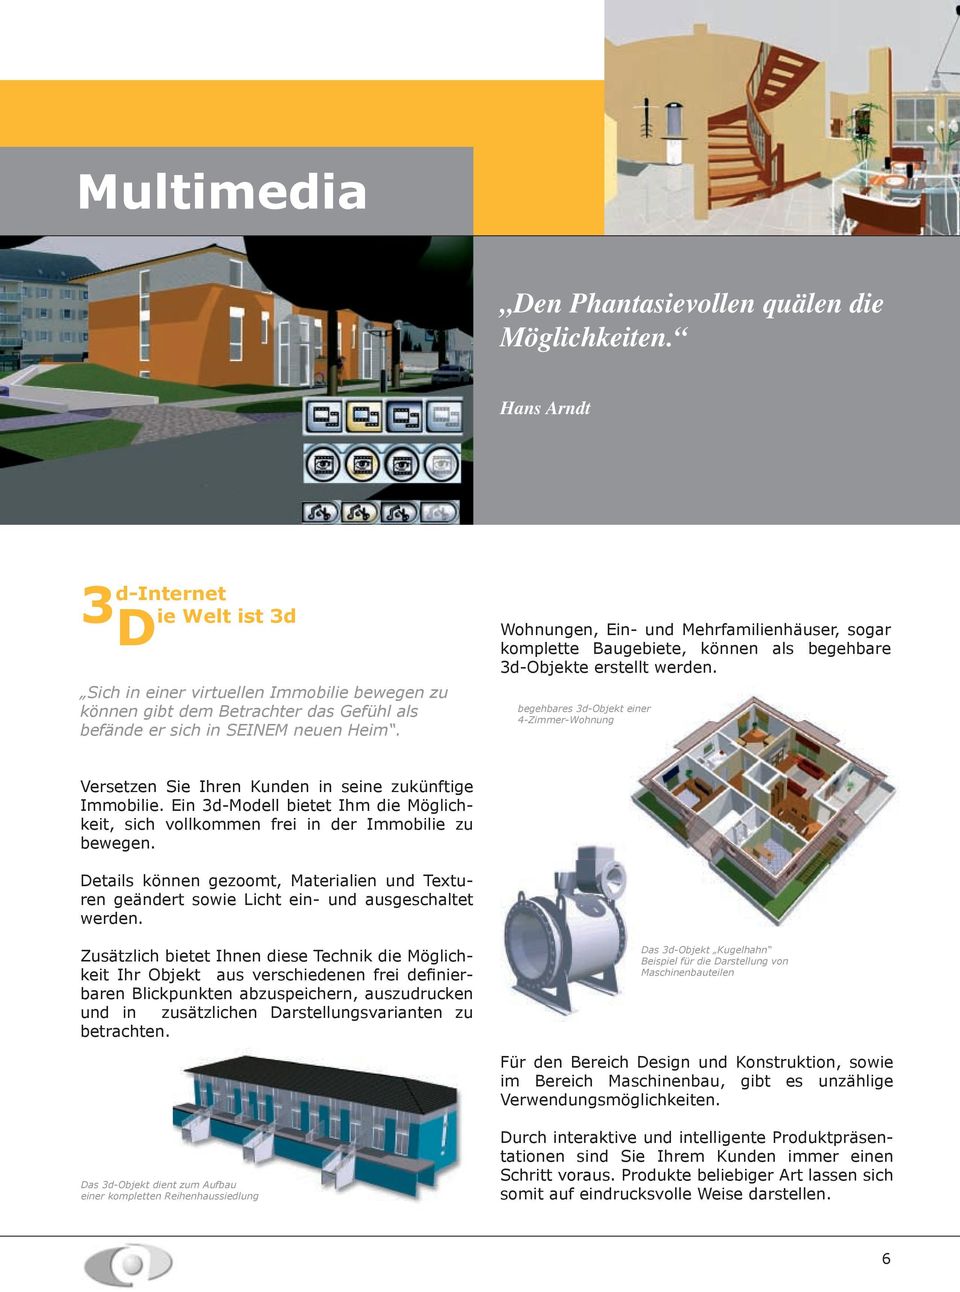 Wohnungen, Ein- und Mehrfamilienhäuser, sogar komplette Baugebiete, können als begehbare 3d-Objekte erstellt werden.